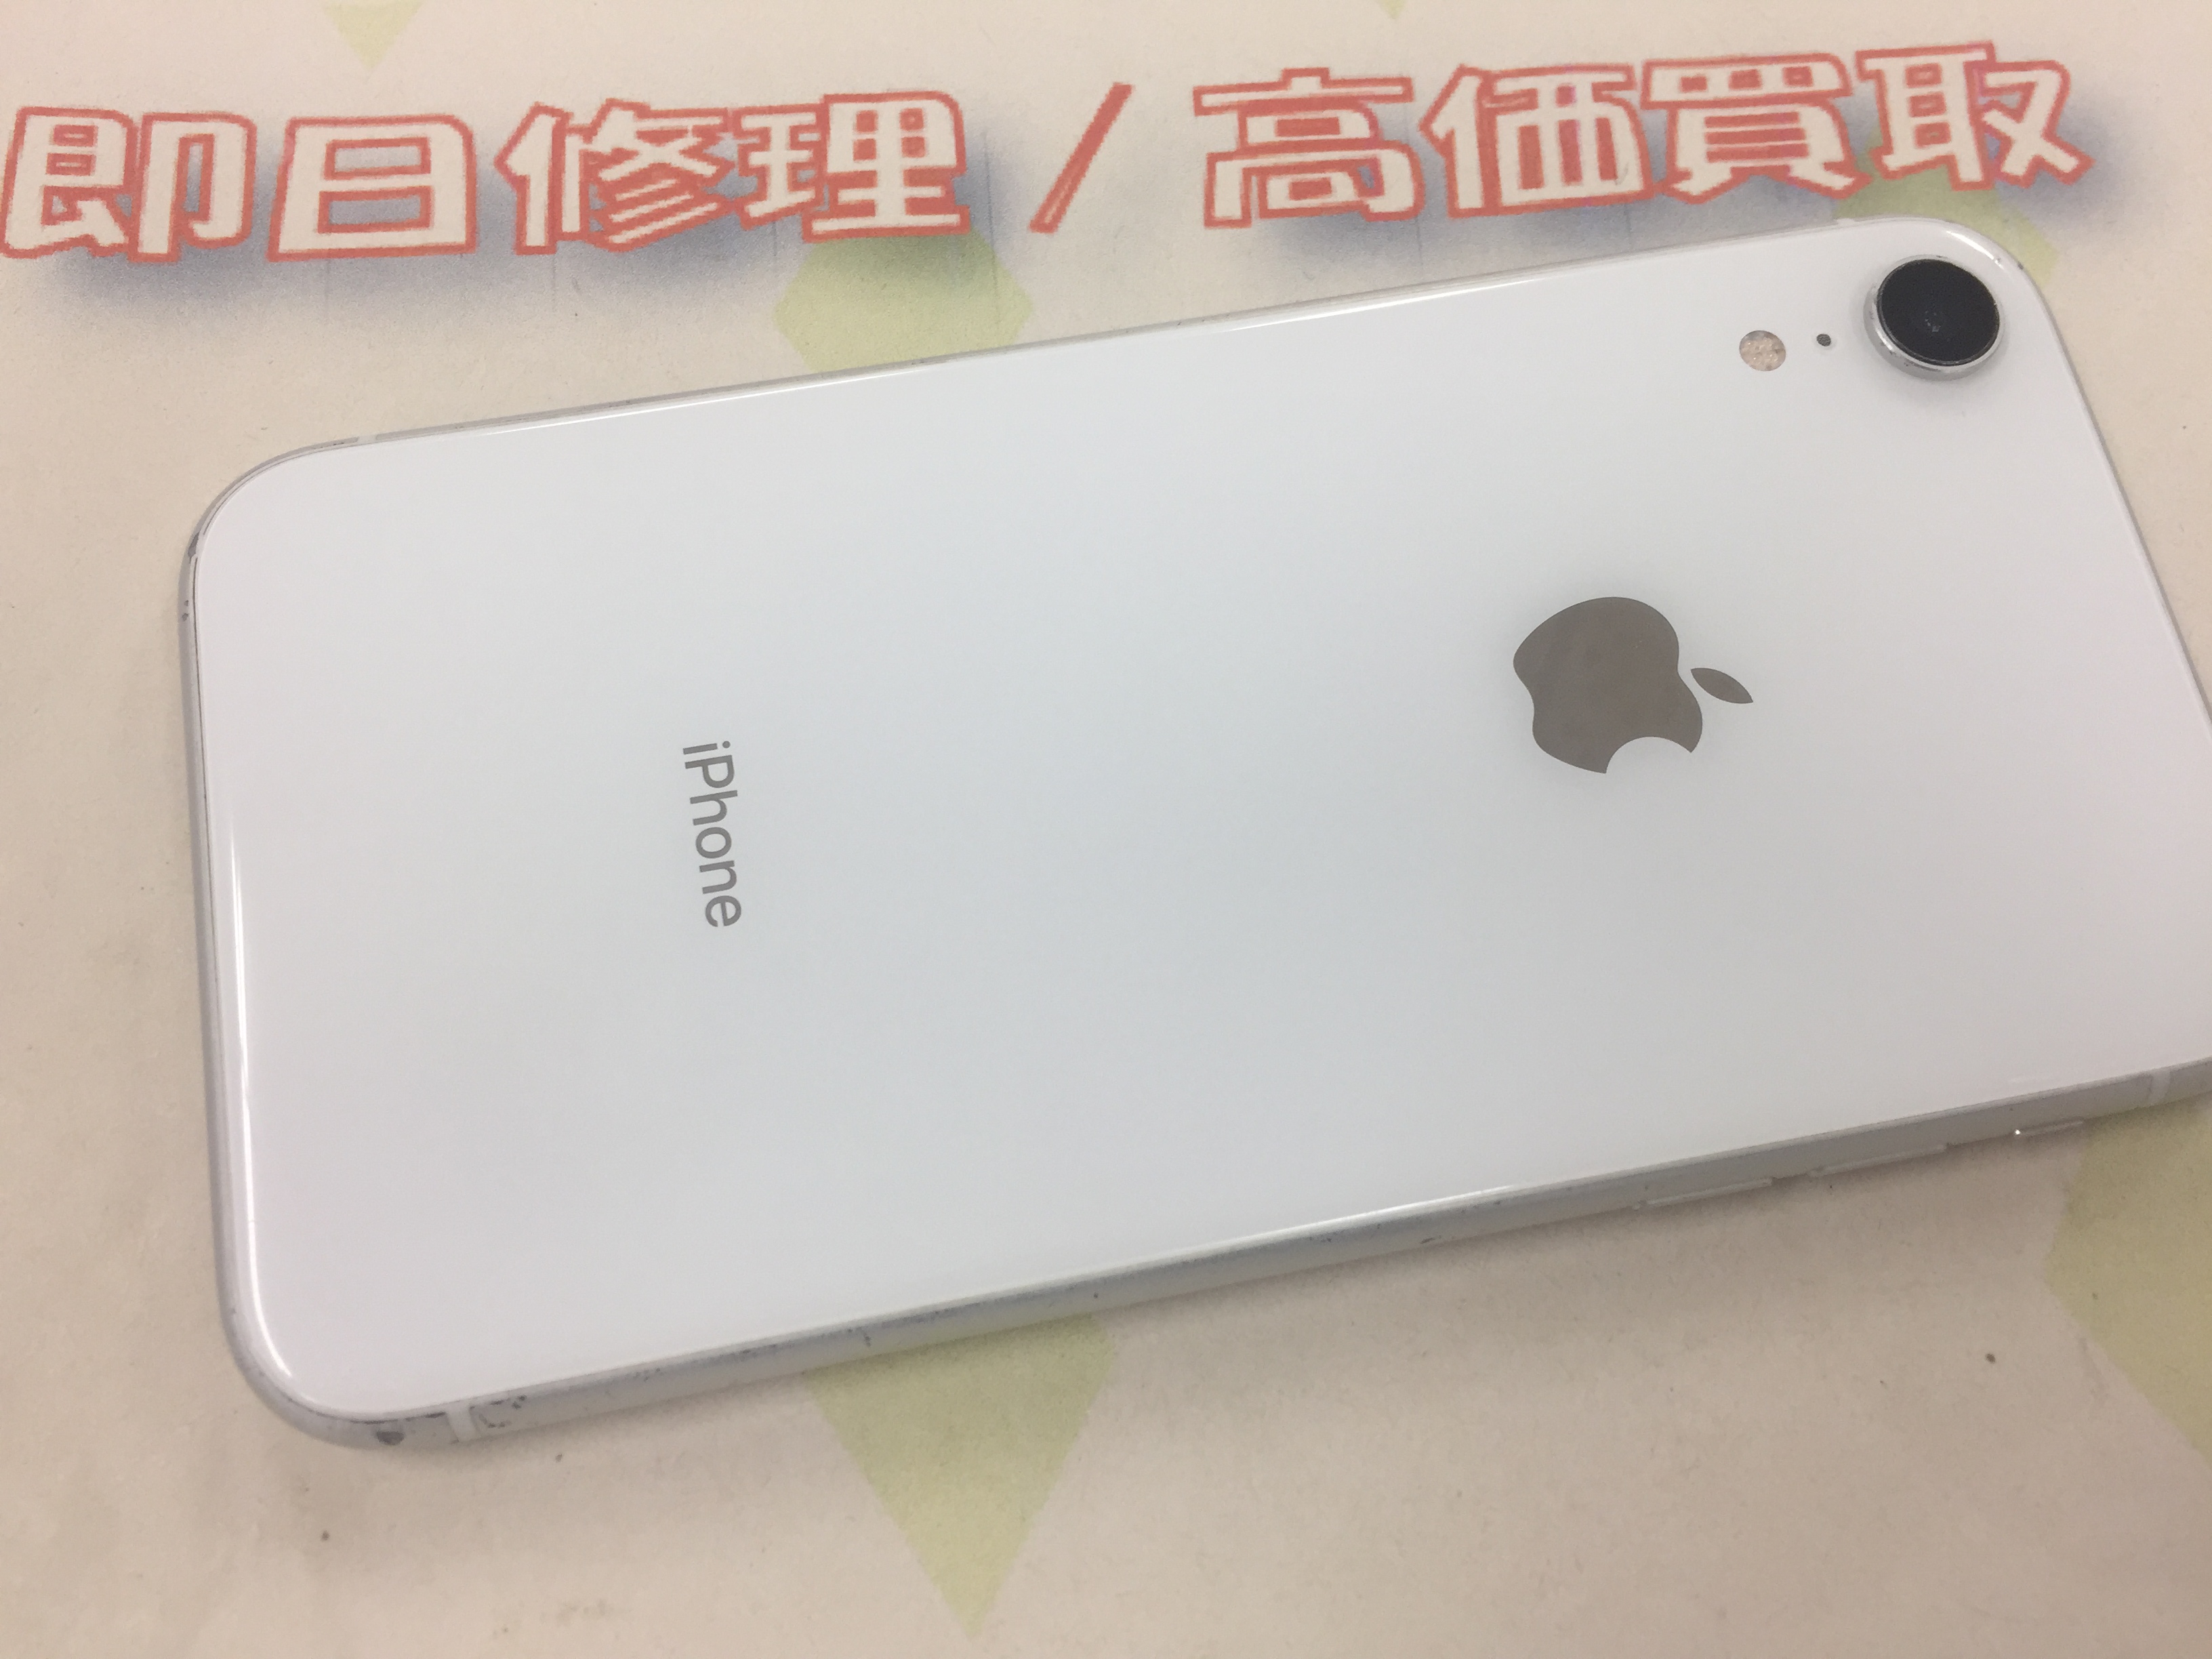 加古川市よりiPhone XR 中古品買取 -2020 9/1- | 加古川でiPhone修理/iPad修理＆買取専門店『SPICE』